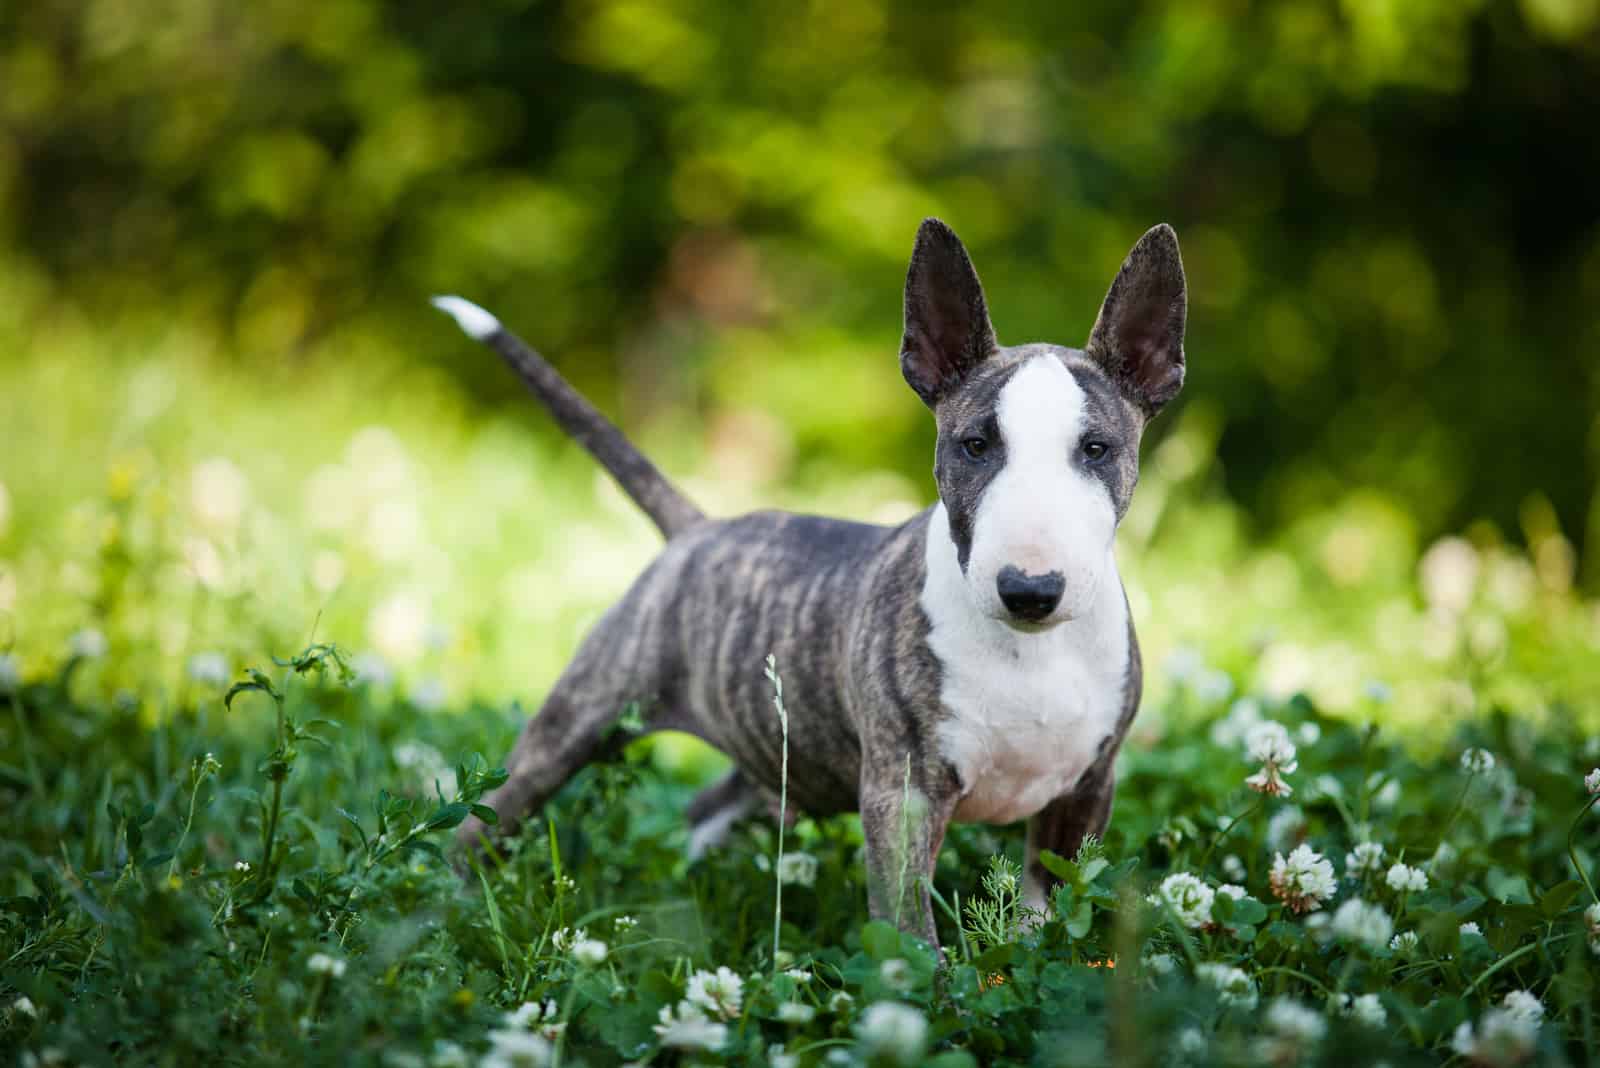 Miniature Bull Terrier standing on grass outside